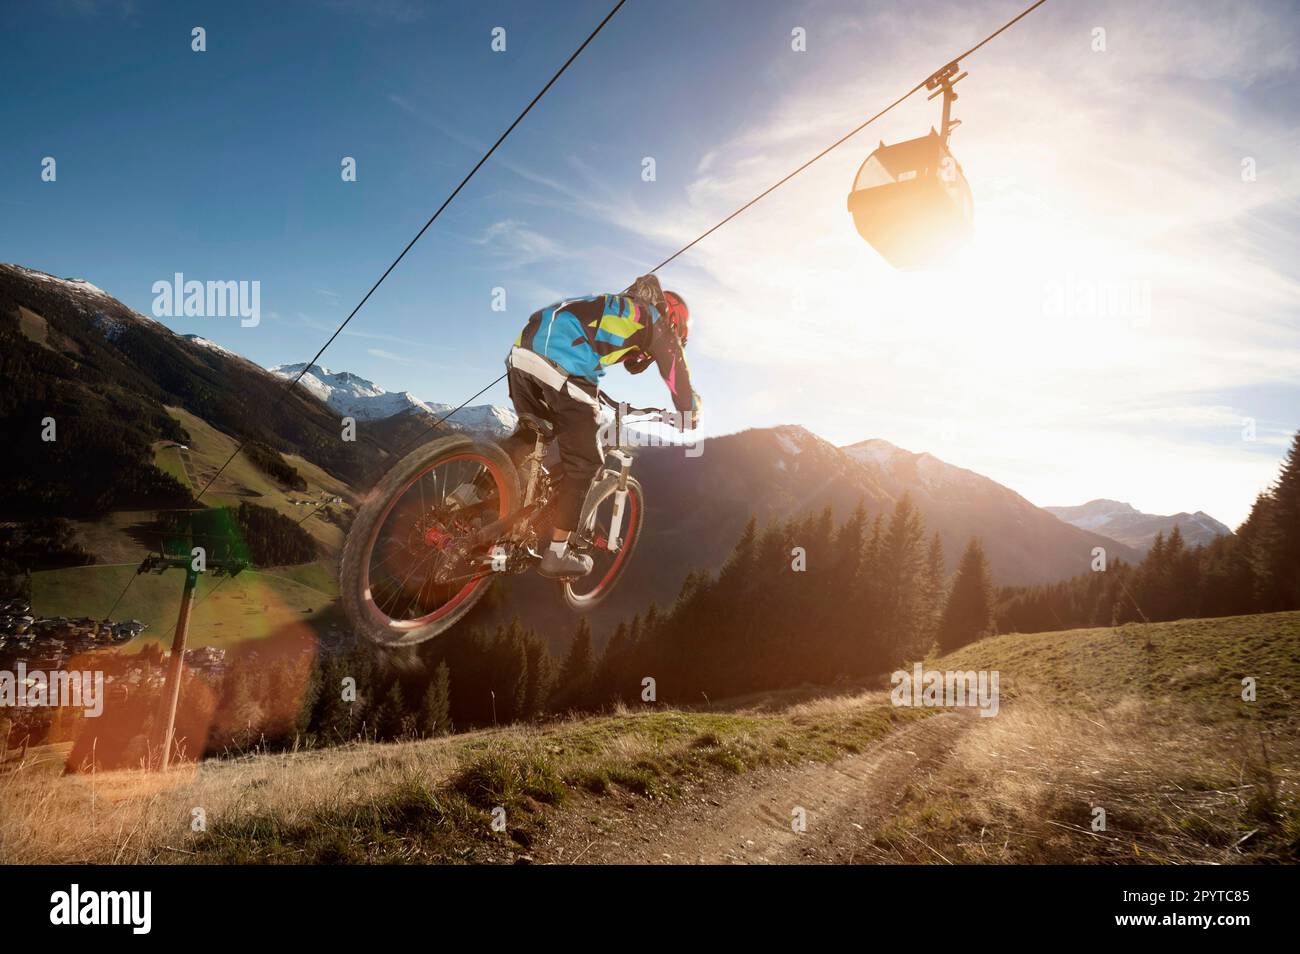 Rear view of a mountain biker jumps over a bump, Saalbach-Hinterglemm, Zell am See, Salzburg, Austria Stock Photo